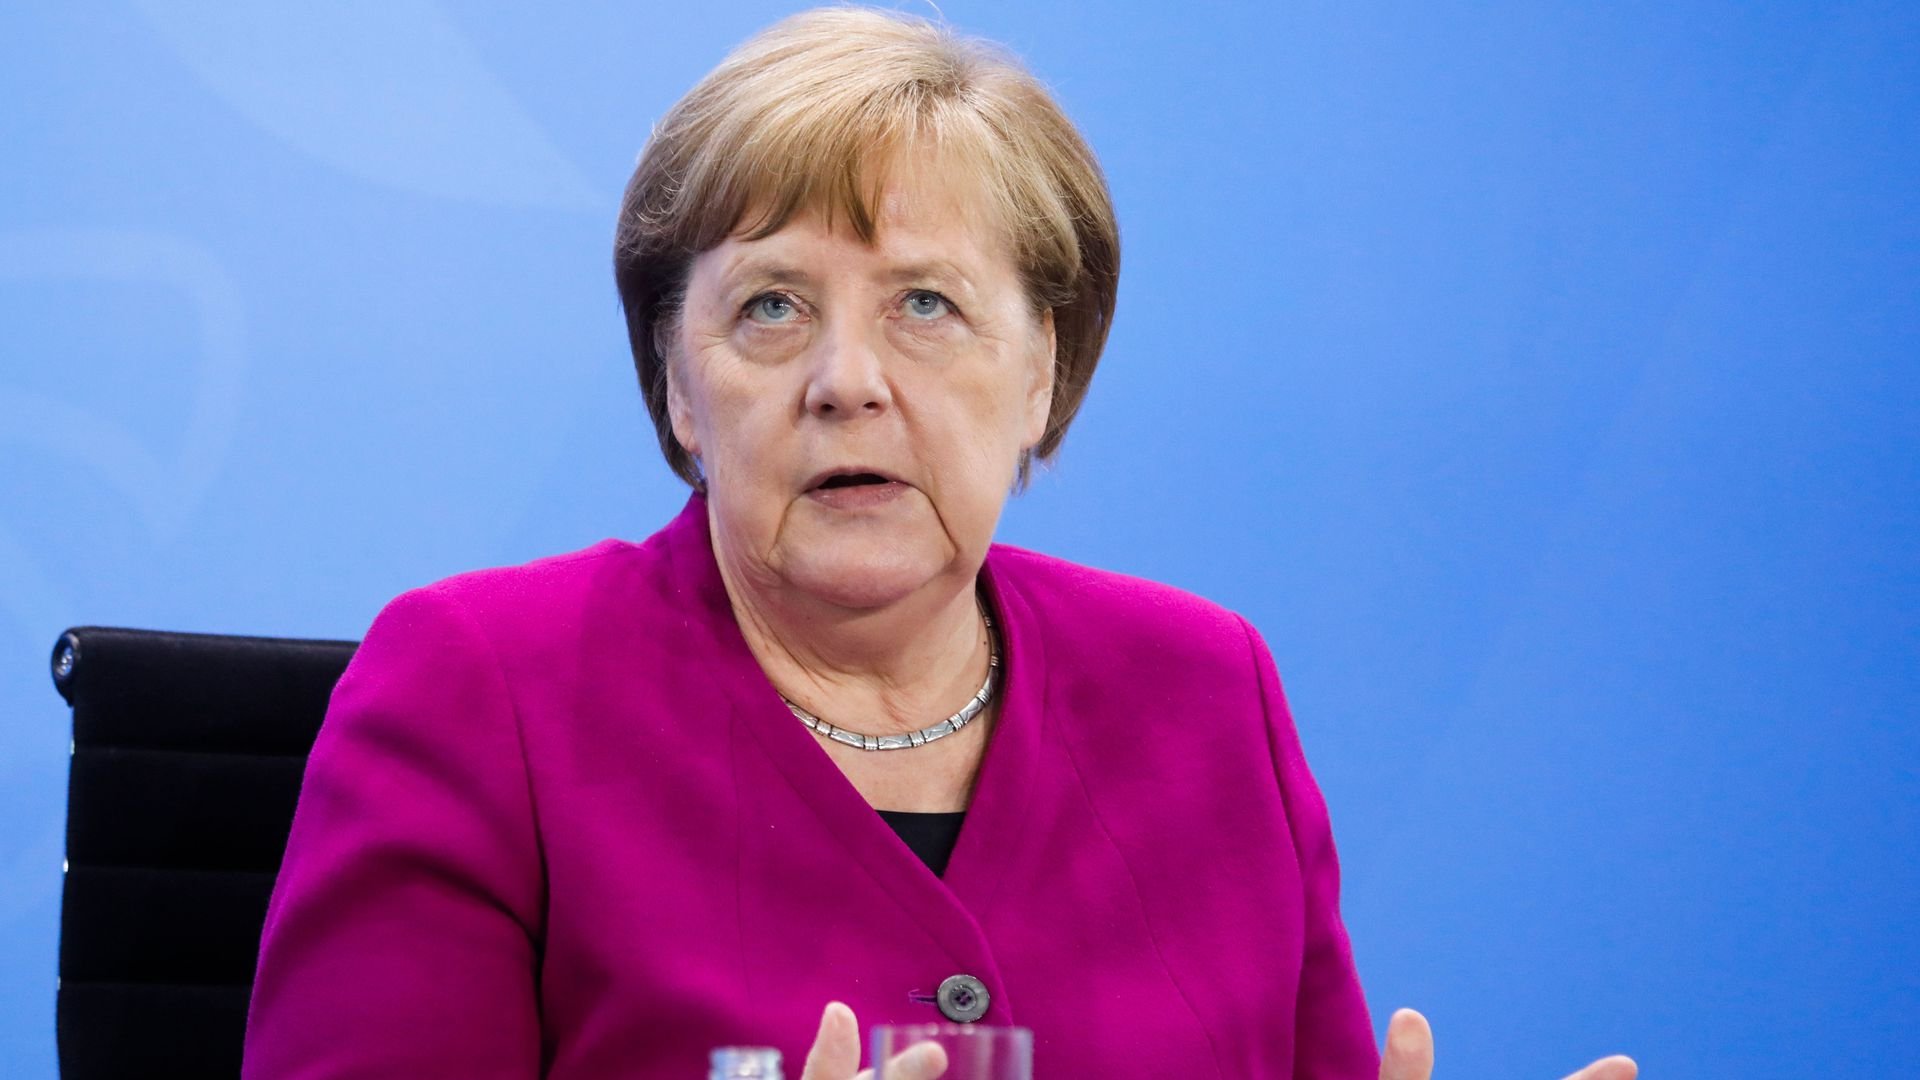  Merkel ”exclude categoric” a cincea candidatură la șefia guvernului federal german